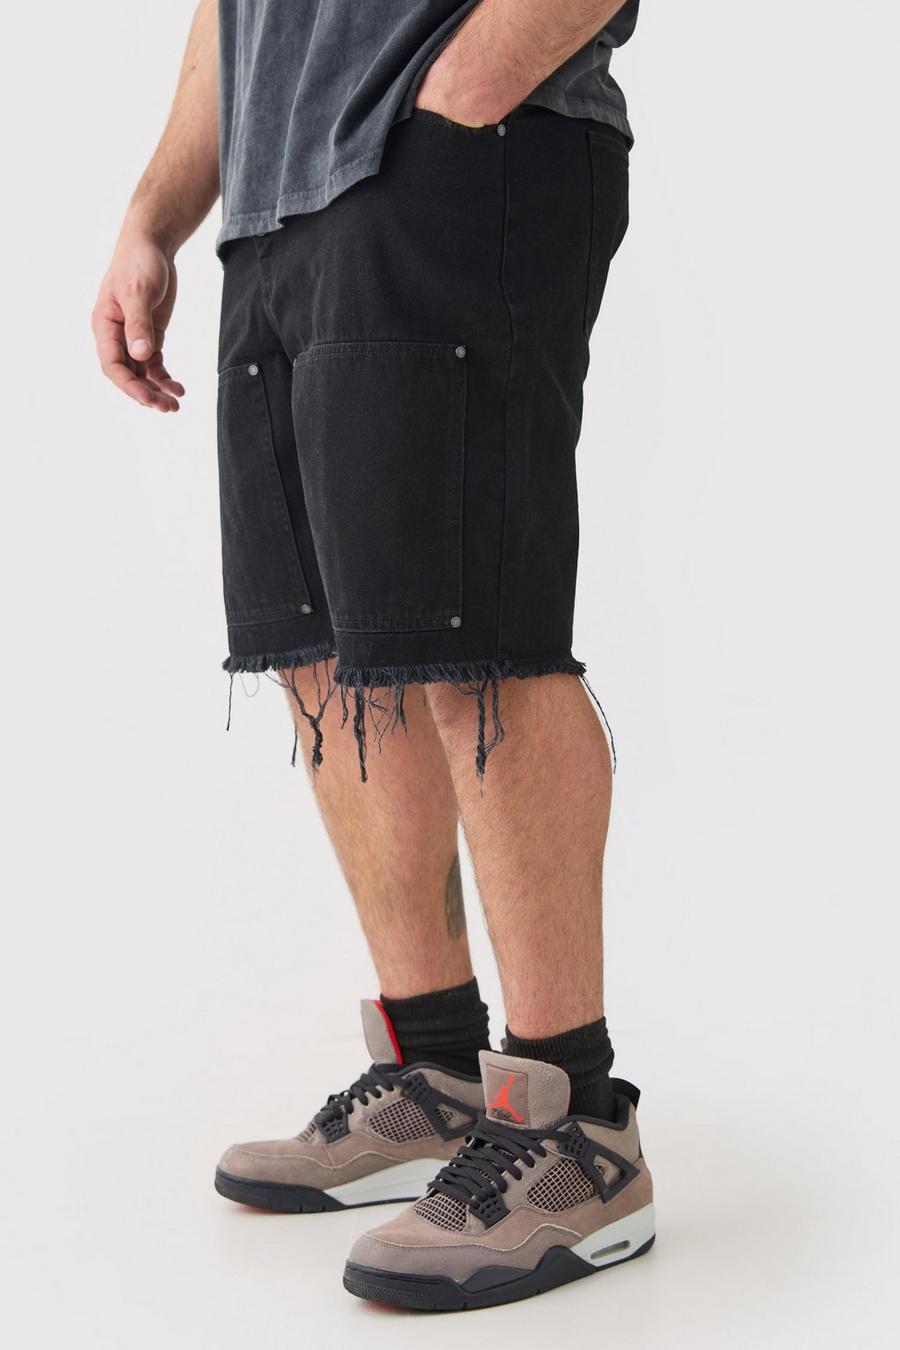 Pantaloncini rilassati Plus Size stile Carpenter in twill slavato con vita fissa, Black